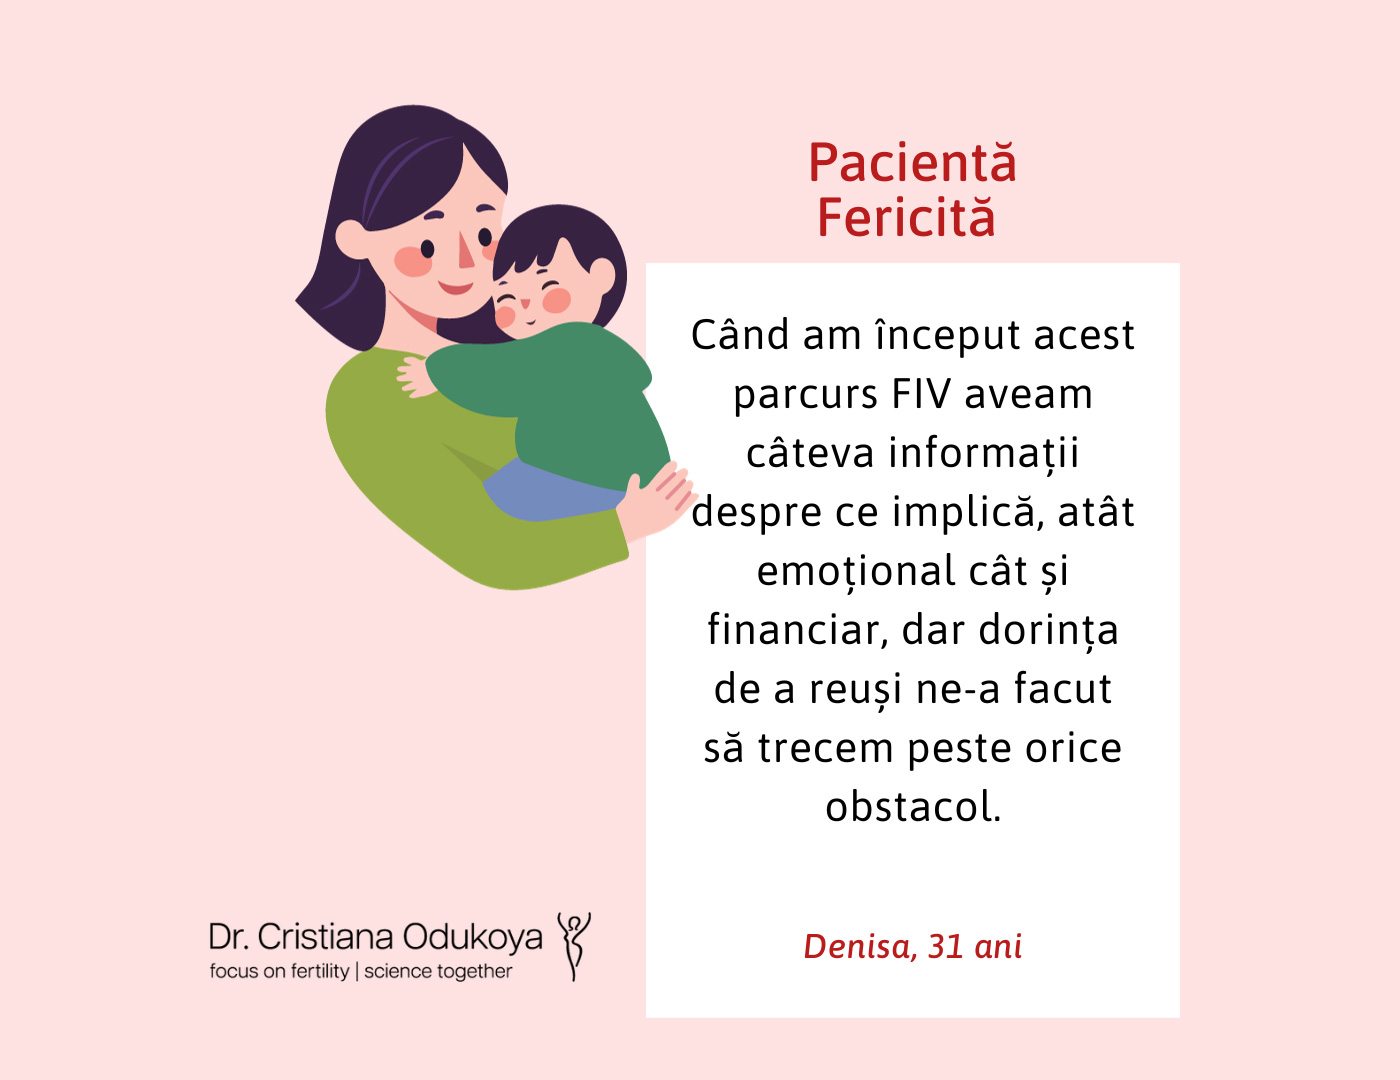 Fertilizarea in vitro a dat rezultate excelente pentru Denisa, 31 ani - #IFVstories